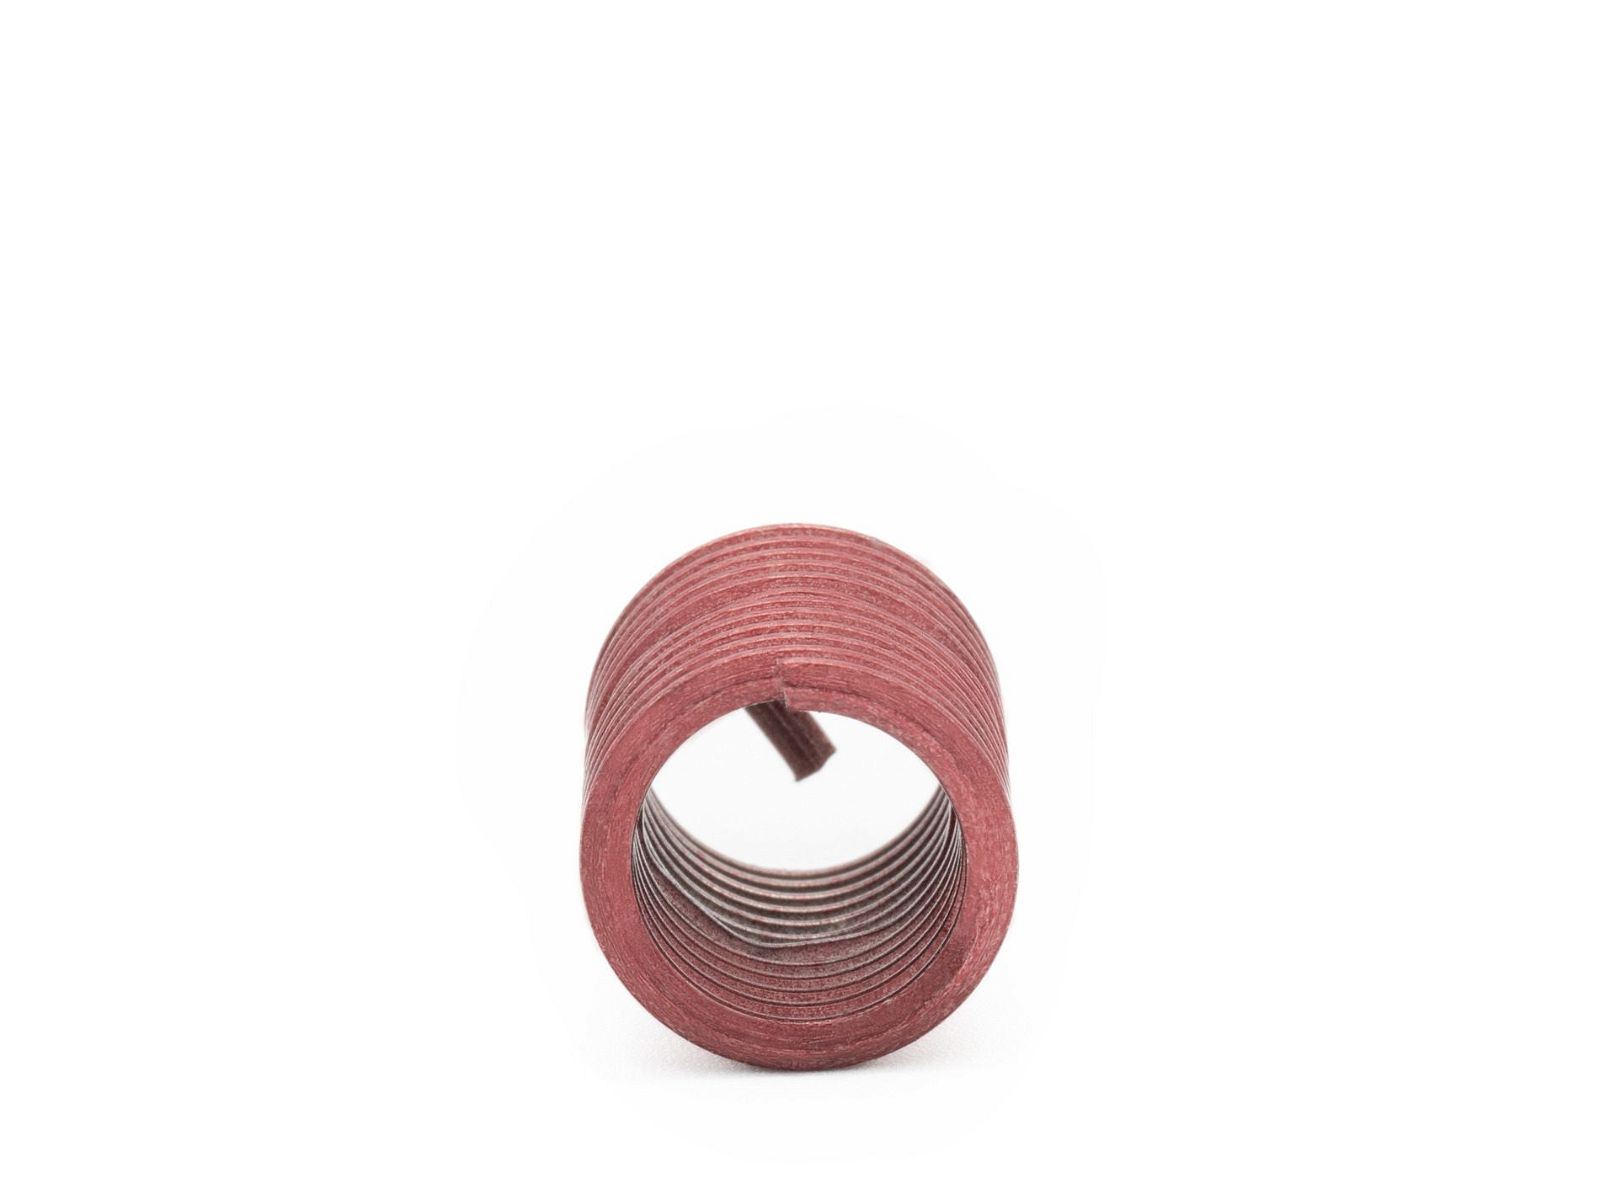 BaerCoil Drahtgewindeeinsätze UNC No. 4 x 40 - 2,0 D (5,69 mm) - screw grip (schraubensichernd) - 100 Stück